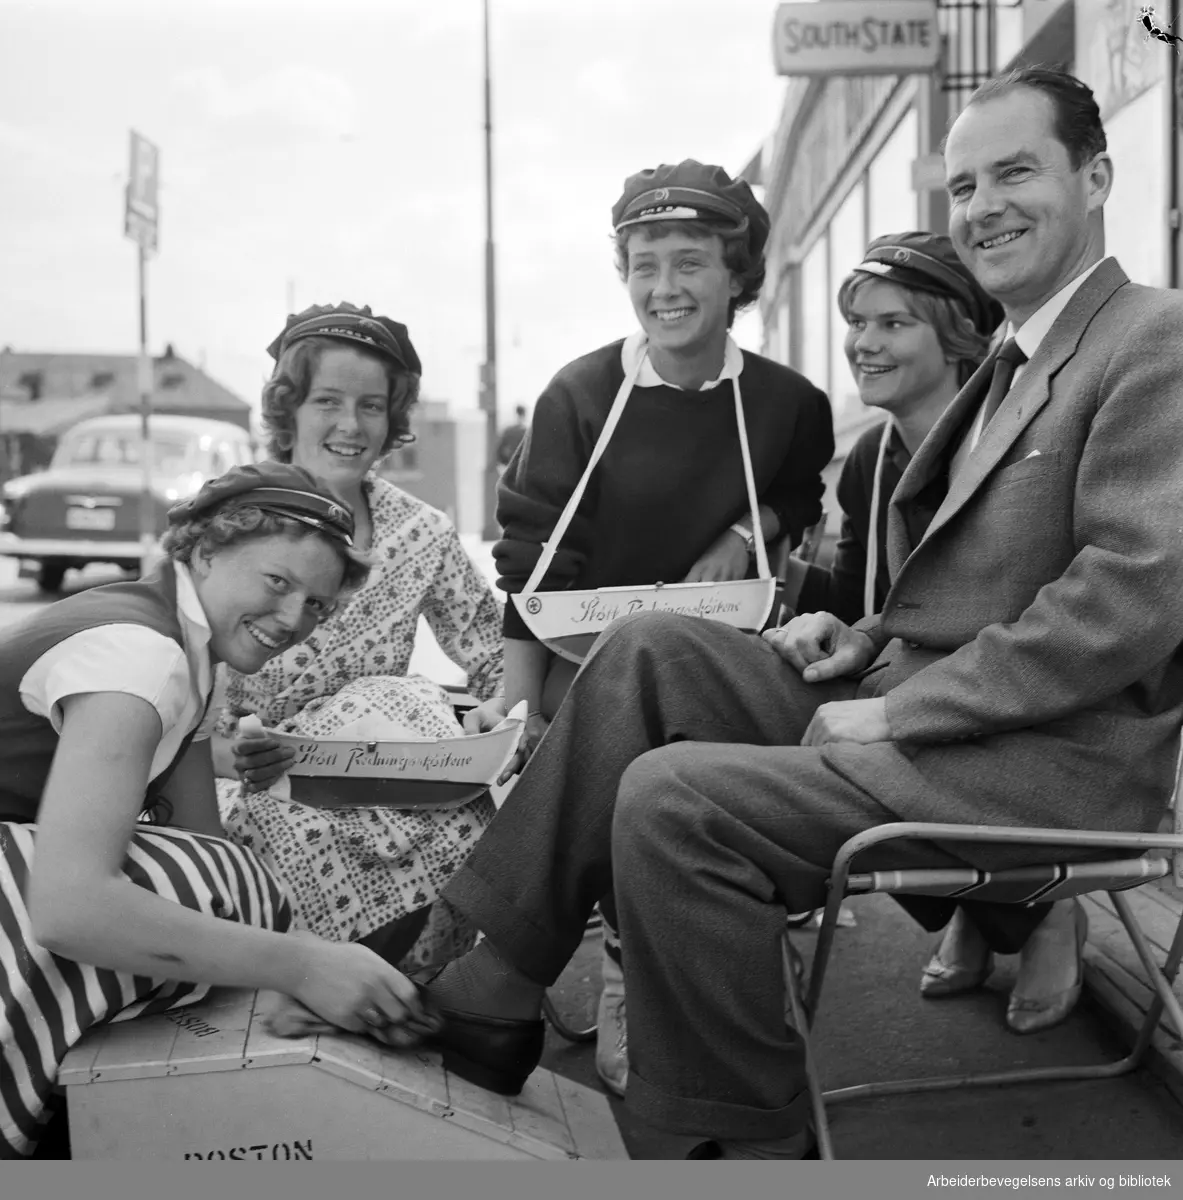 Russen pusser sko til inntekt for Redningsselskapet. Fra venstre: Eva Selbak, Kirsti Koch, Brit Fredheim, Maria Lefdal og Jon Ingvalstad Hanssen. Mai 1960.